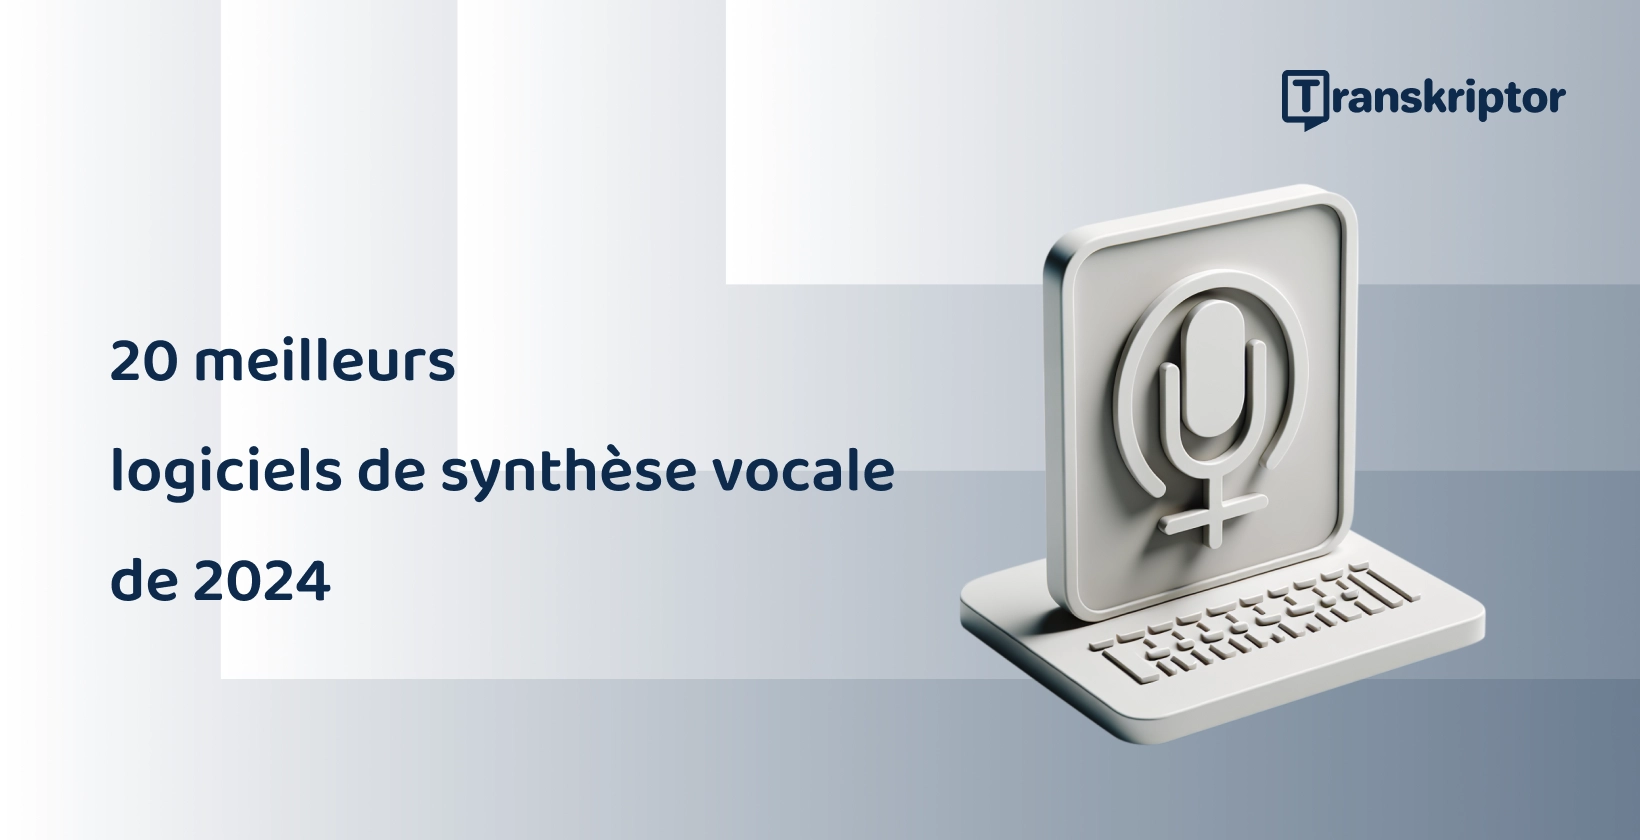 Les 20 meilleures applications de synthèse vocale en 2024, représentées par un graphique de microphone et de clavier.